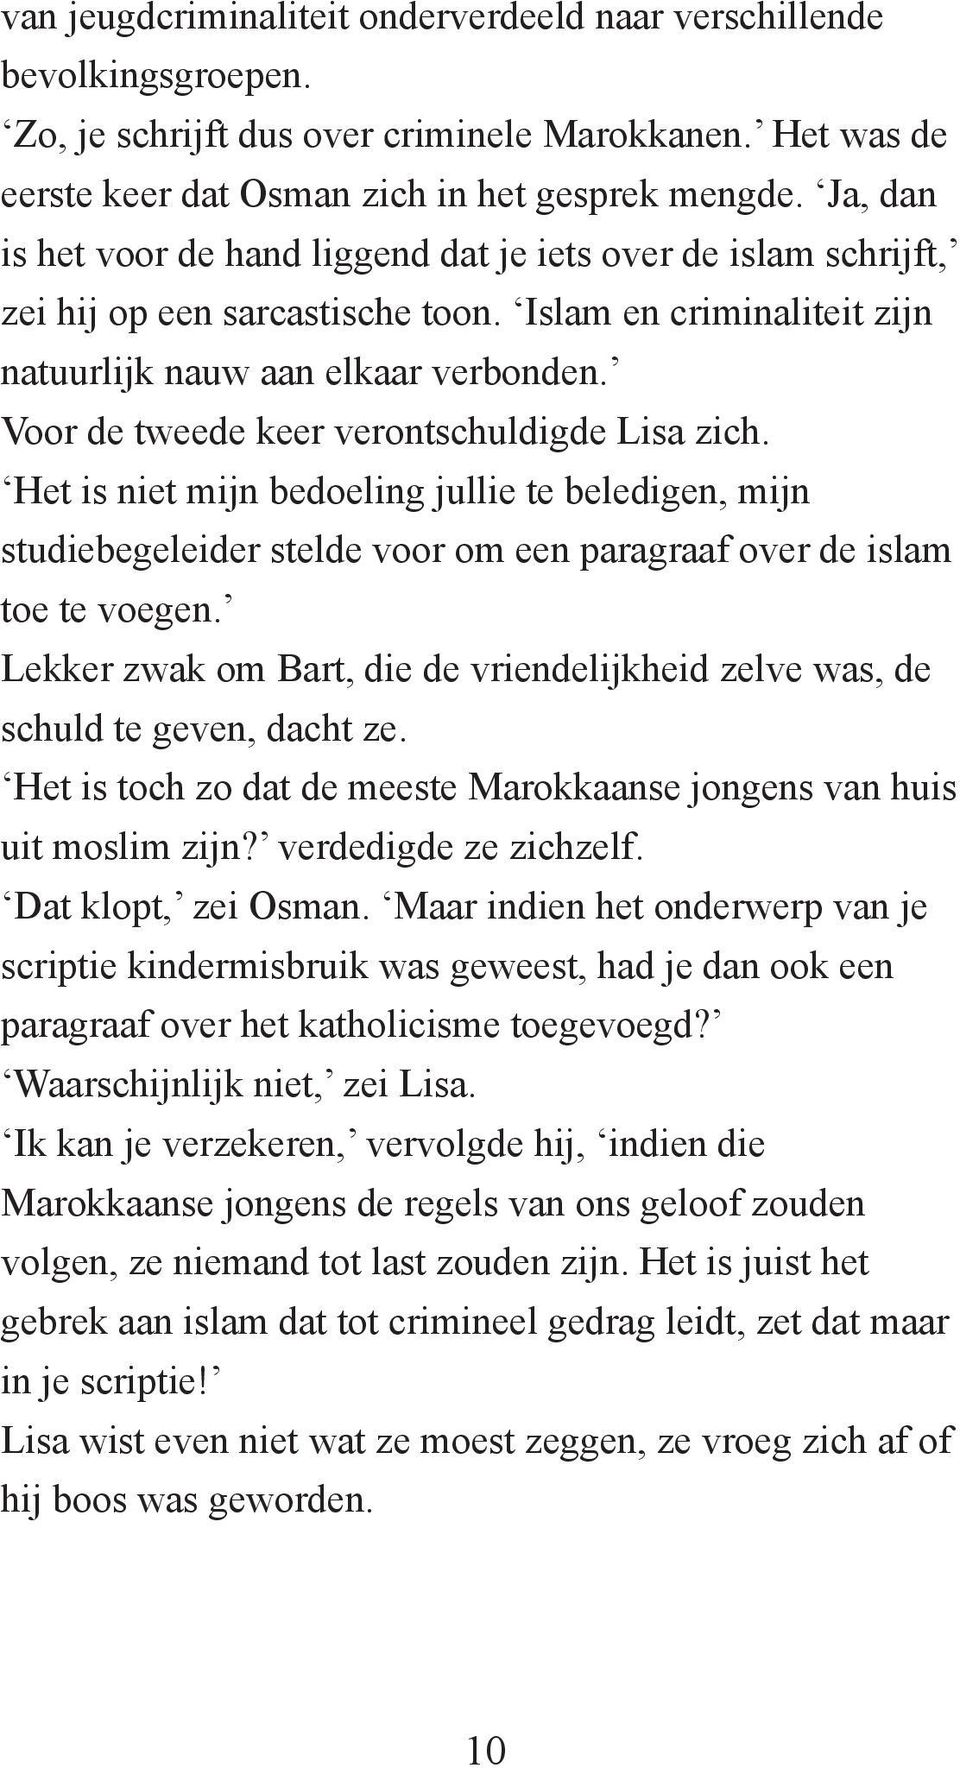 Voor de tweede keer verontschuldigde Lisa zich. Het is niet mijn bedoeling jullie te beledigen, mijn studiebegeleider stelde voor om een paragraaf over de islam toe te voegen.